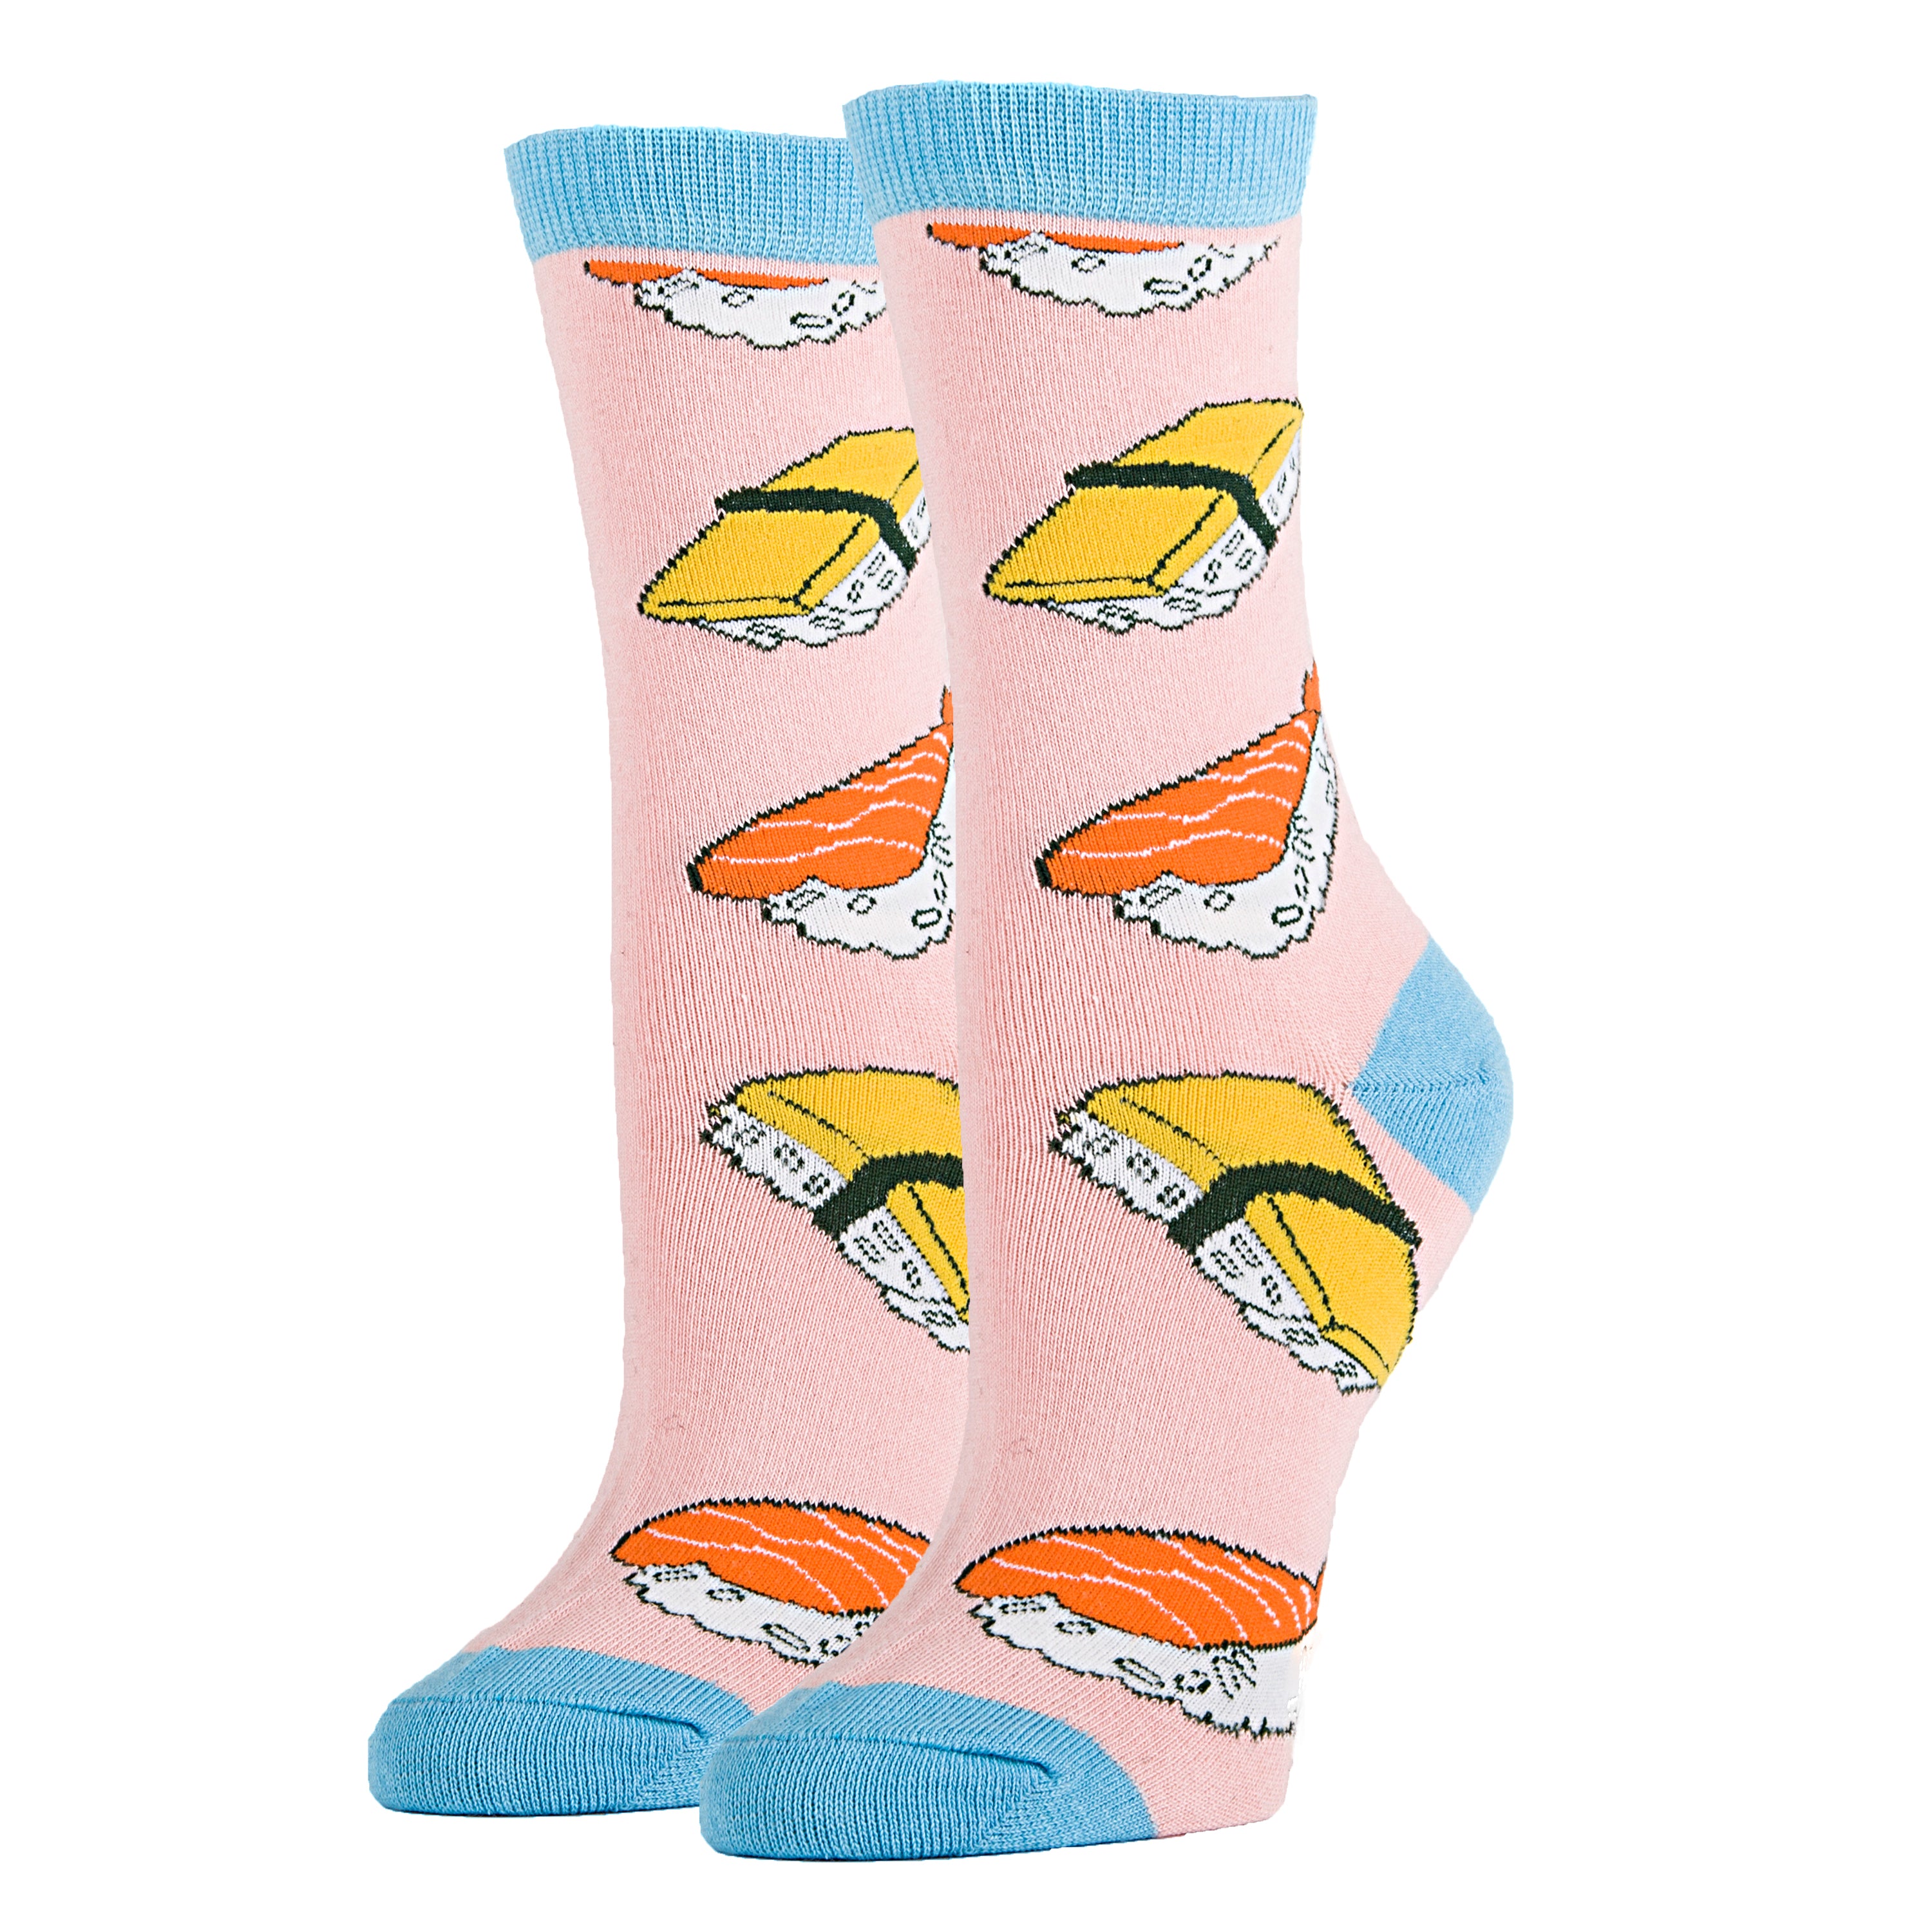 Sushi Rocks Socks, Novelty Socks For Women